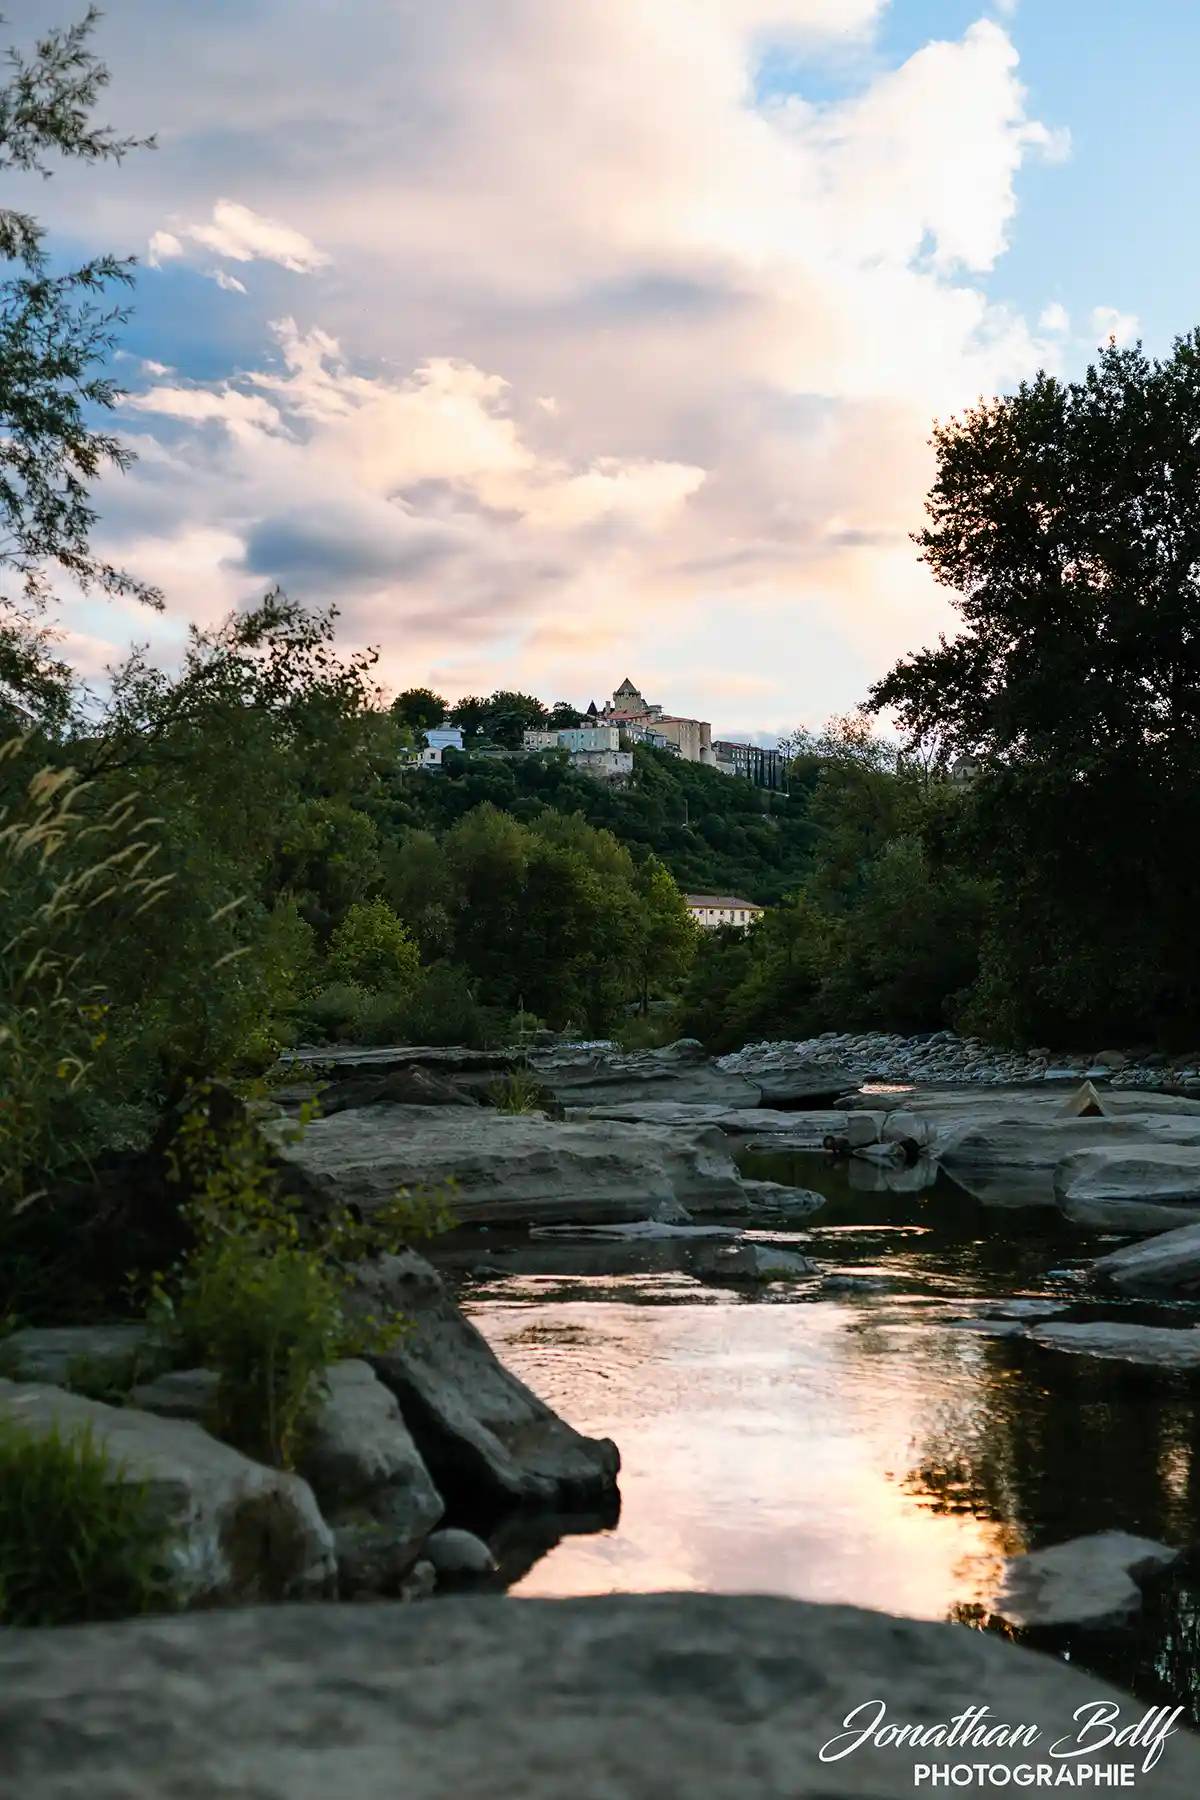 Photographie du chateau d'Aubenas depuis la rivière par Jonathan Bdlf Photographie